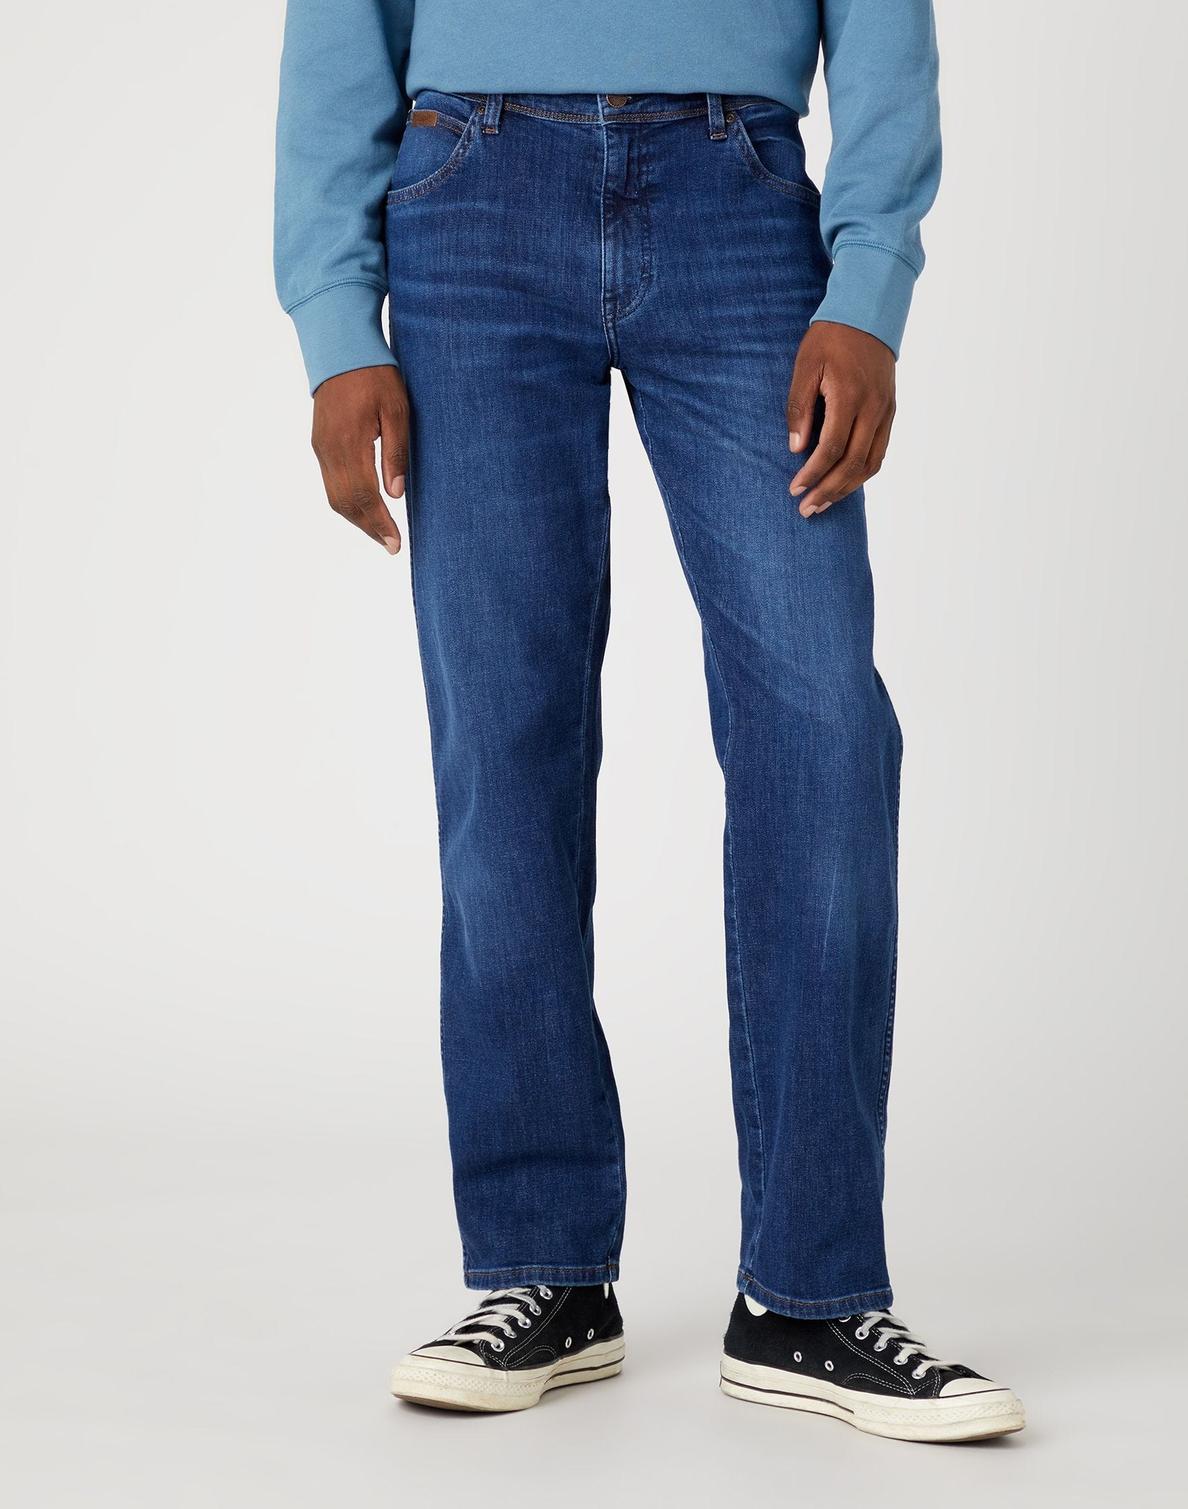 Texas Jeans Denimblå för 499 kr på Brothers